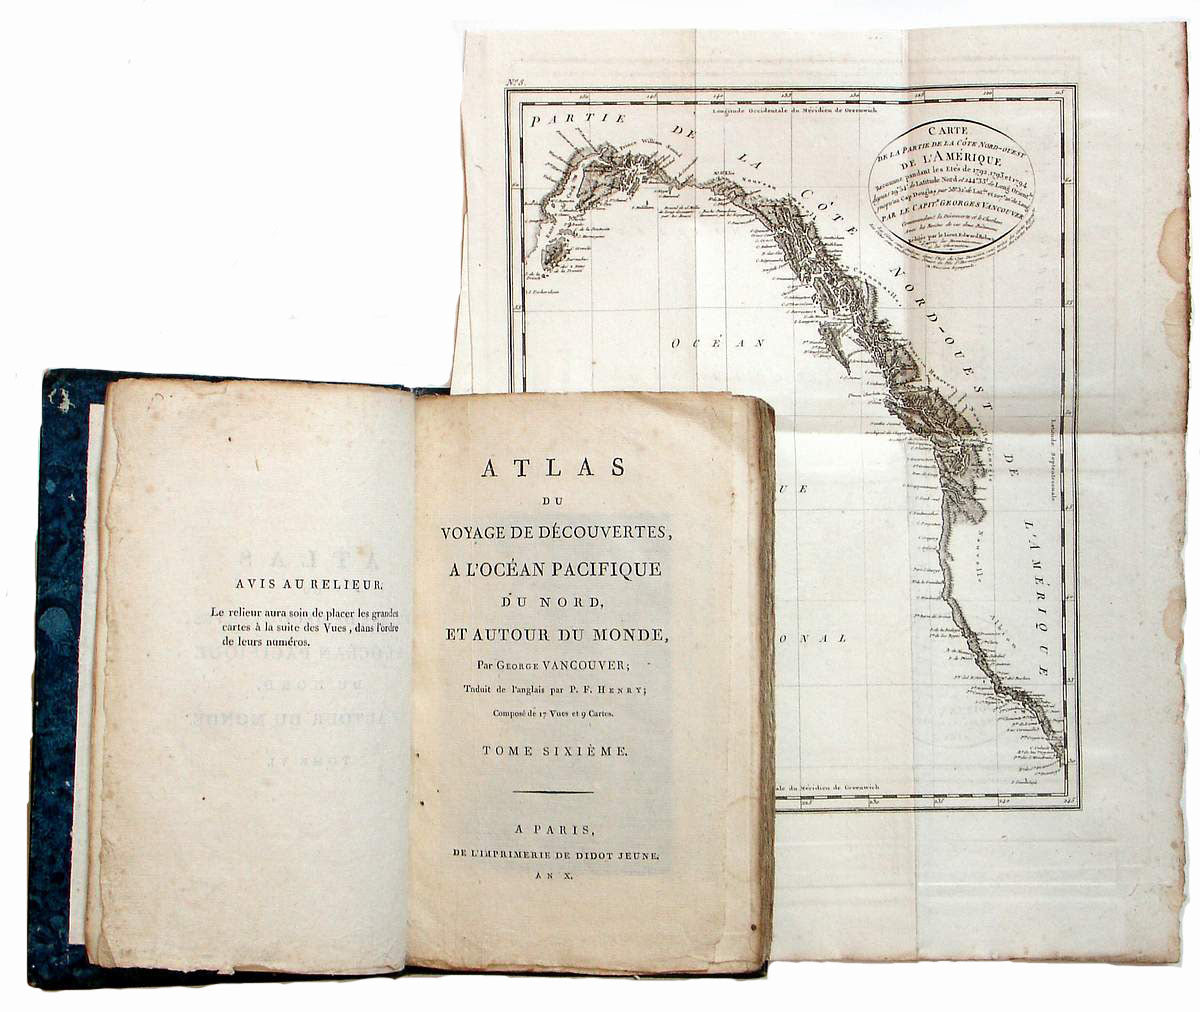 Atlas Du Voyage De Decouvertes a l"Ocean Pacifique du Nord et au